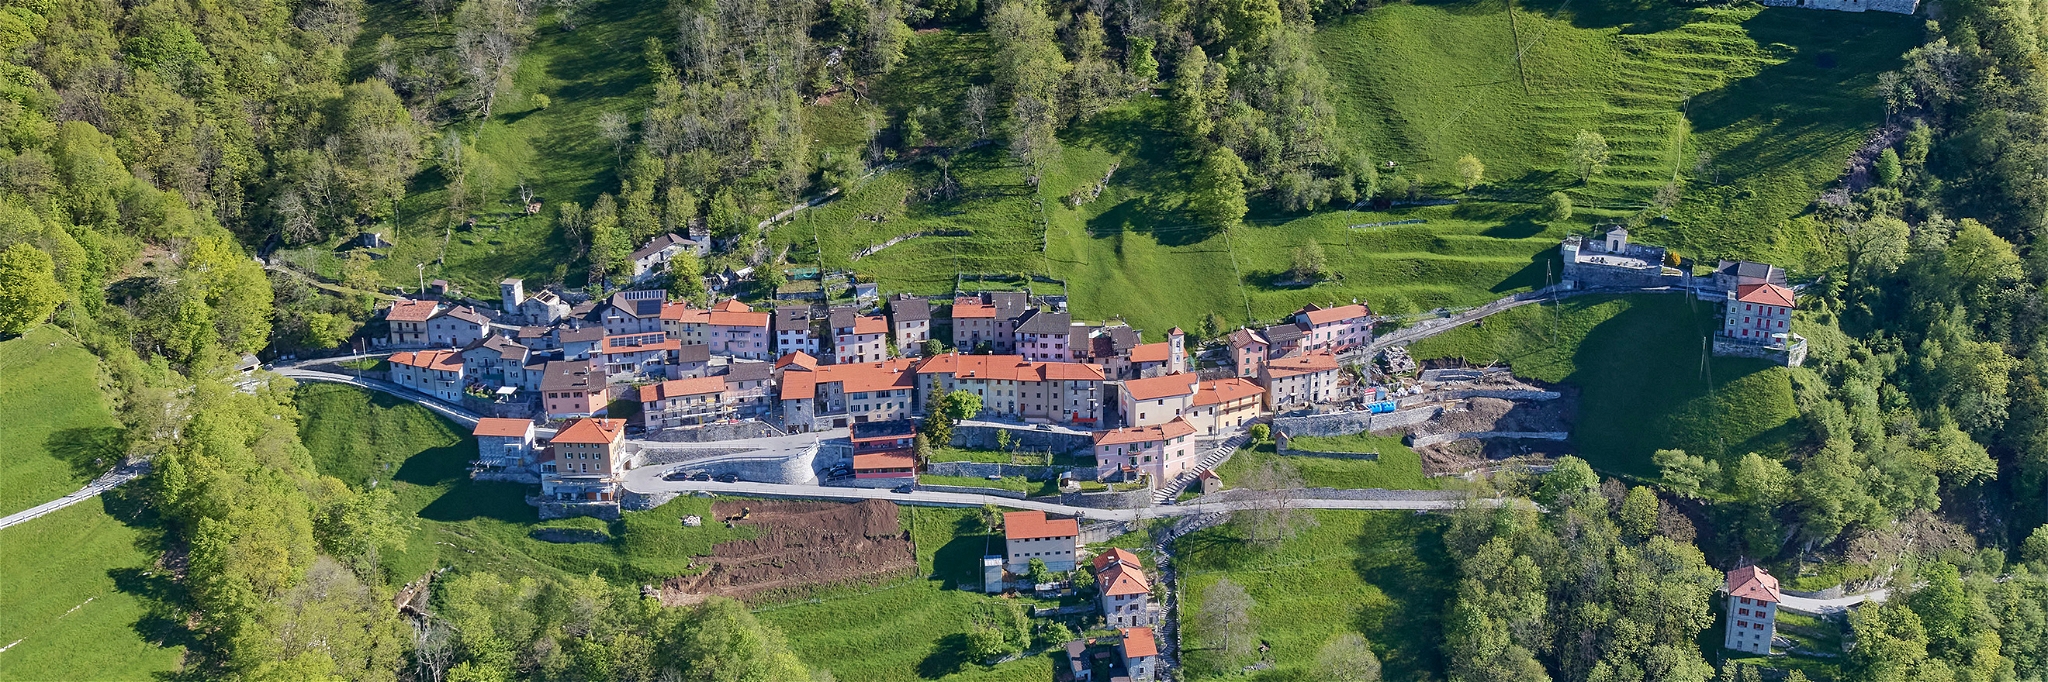 Das kleine Dorf Scudellate liegt im Süden des Tessins